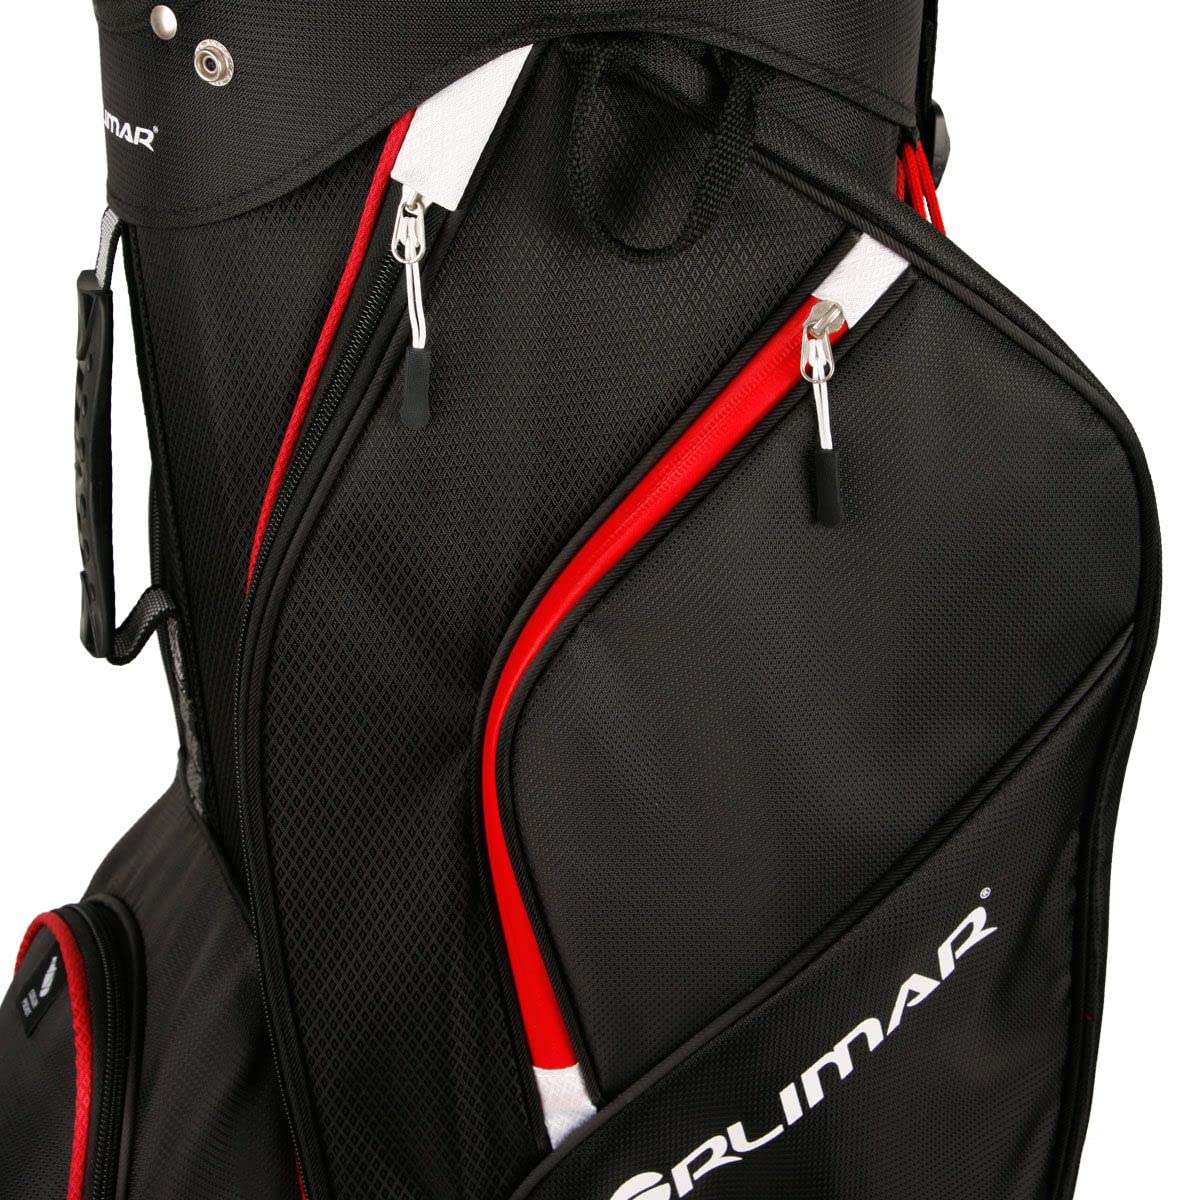 Orlimar CRX 14.6 Golf Cart Bag, 14-Way Divider Top, 6 Zippered Pockets Including Insulated Cooler Pocket